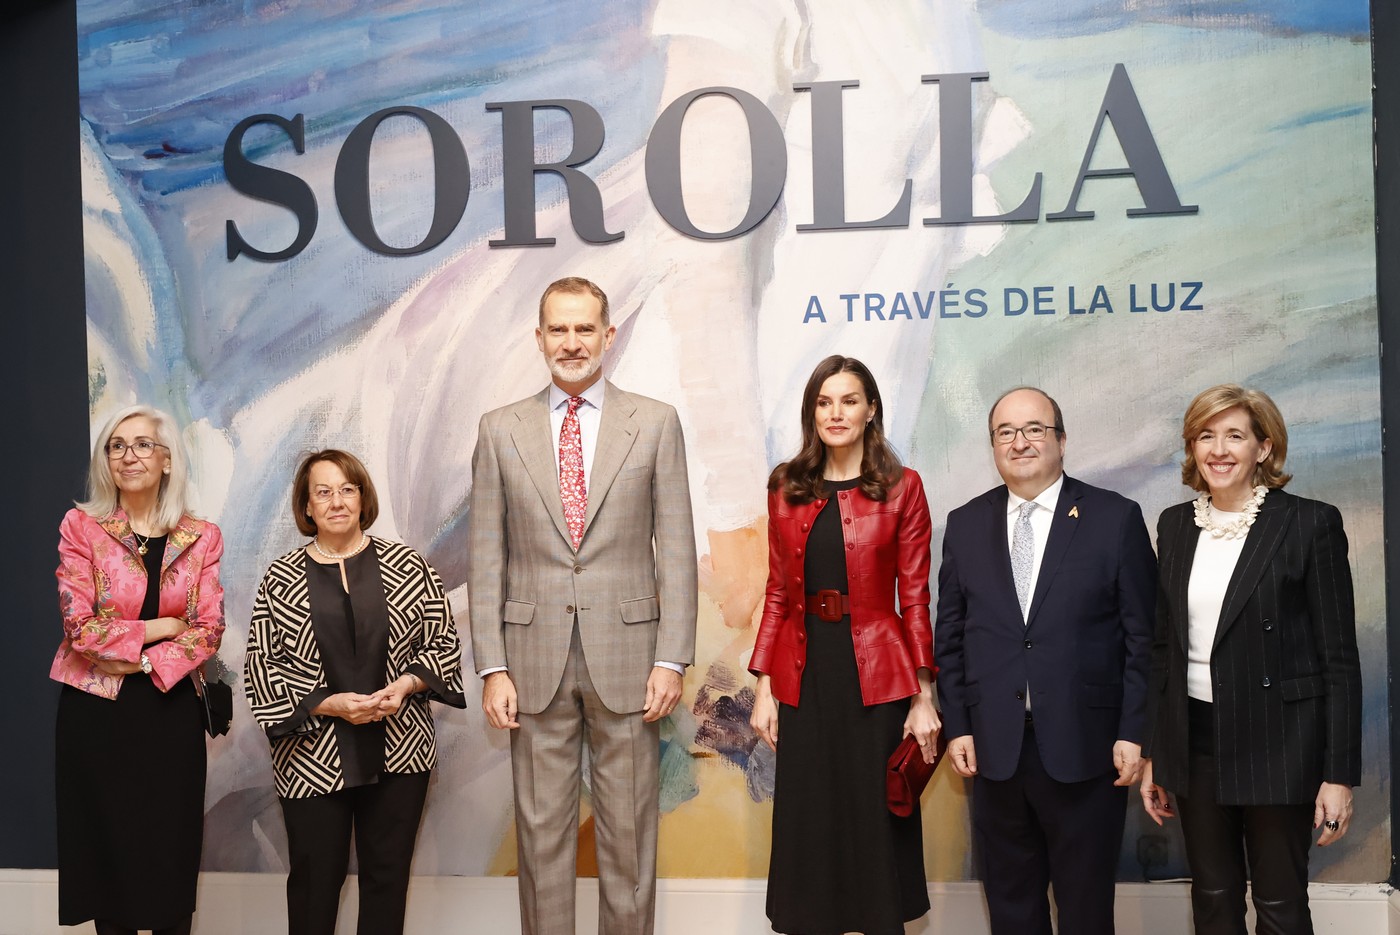 Los Reyes de España inauguran la exposición «Sorolla a través de la luz» en el Palacio Real de Madrid